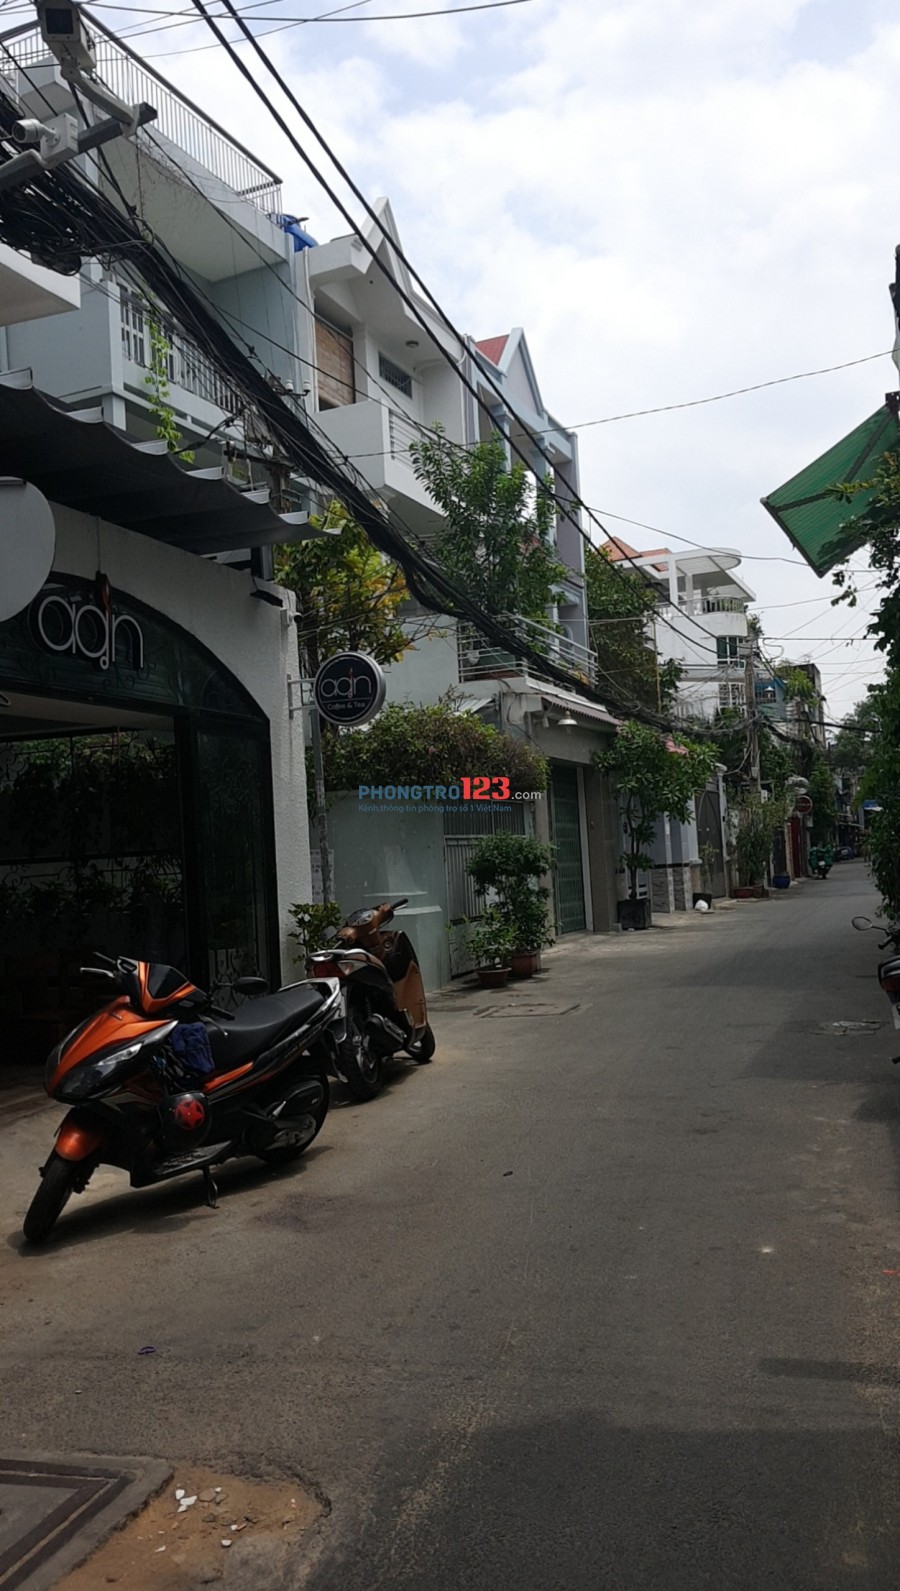 Cần cho thuê nhà nguyên căn 170 m2 đường 160 - Lã Xuân Oai ngay chợ nhỏ phường Tăng Nhơn Phú A, quận 9